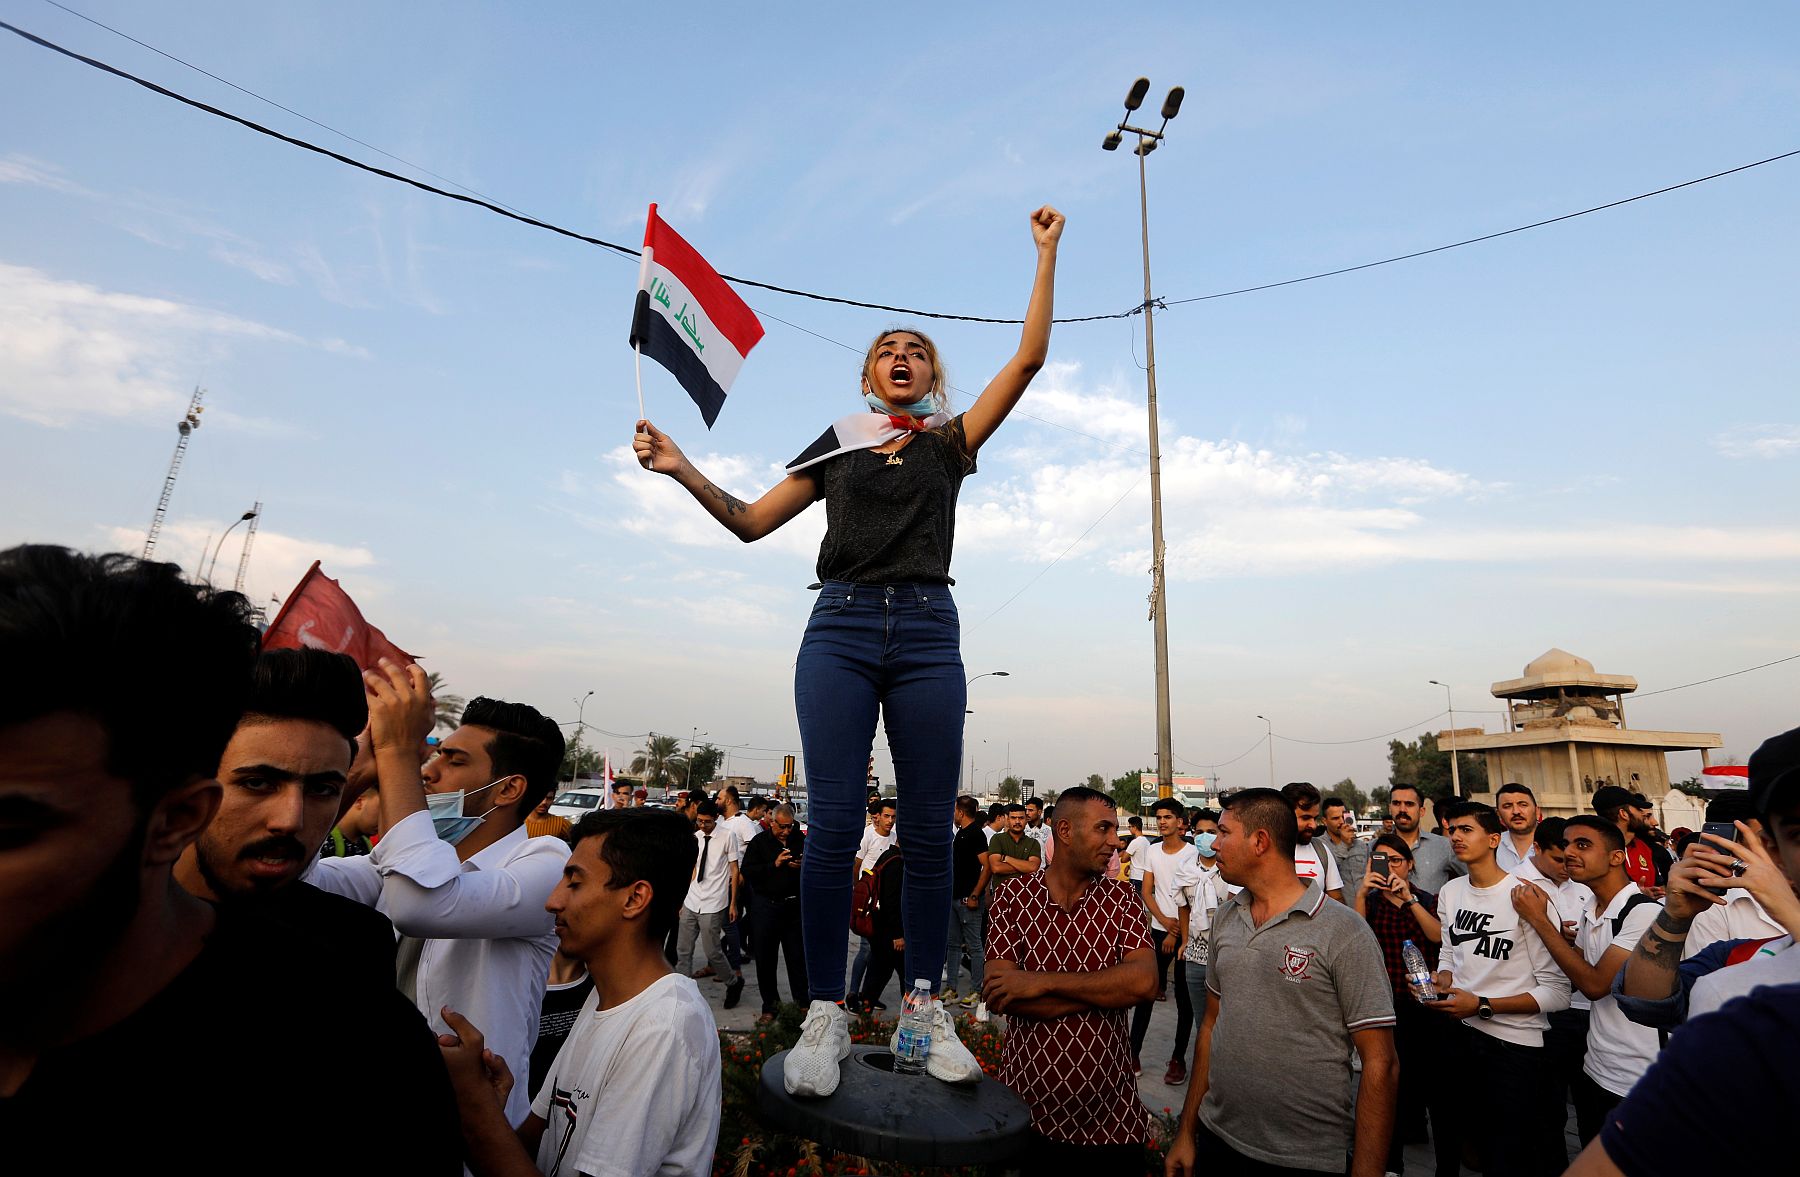 Iraakse demonstranten: ‘Hoe meer geweld je gebruikt, hoe luider we roepen’